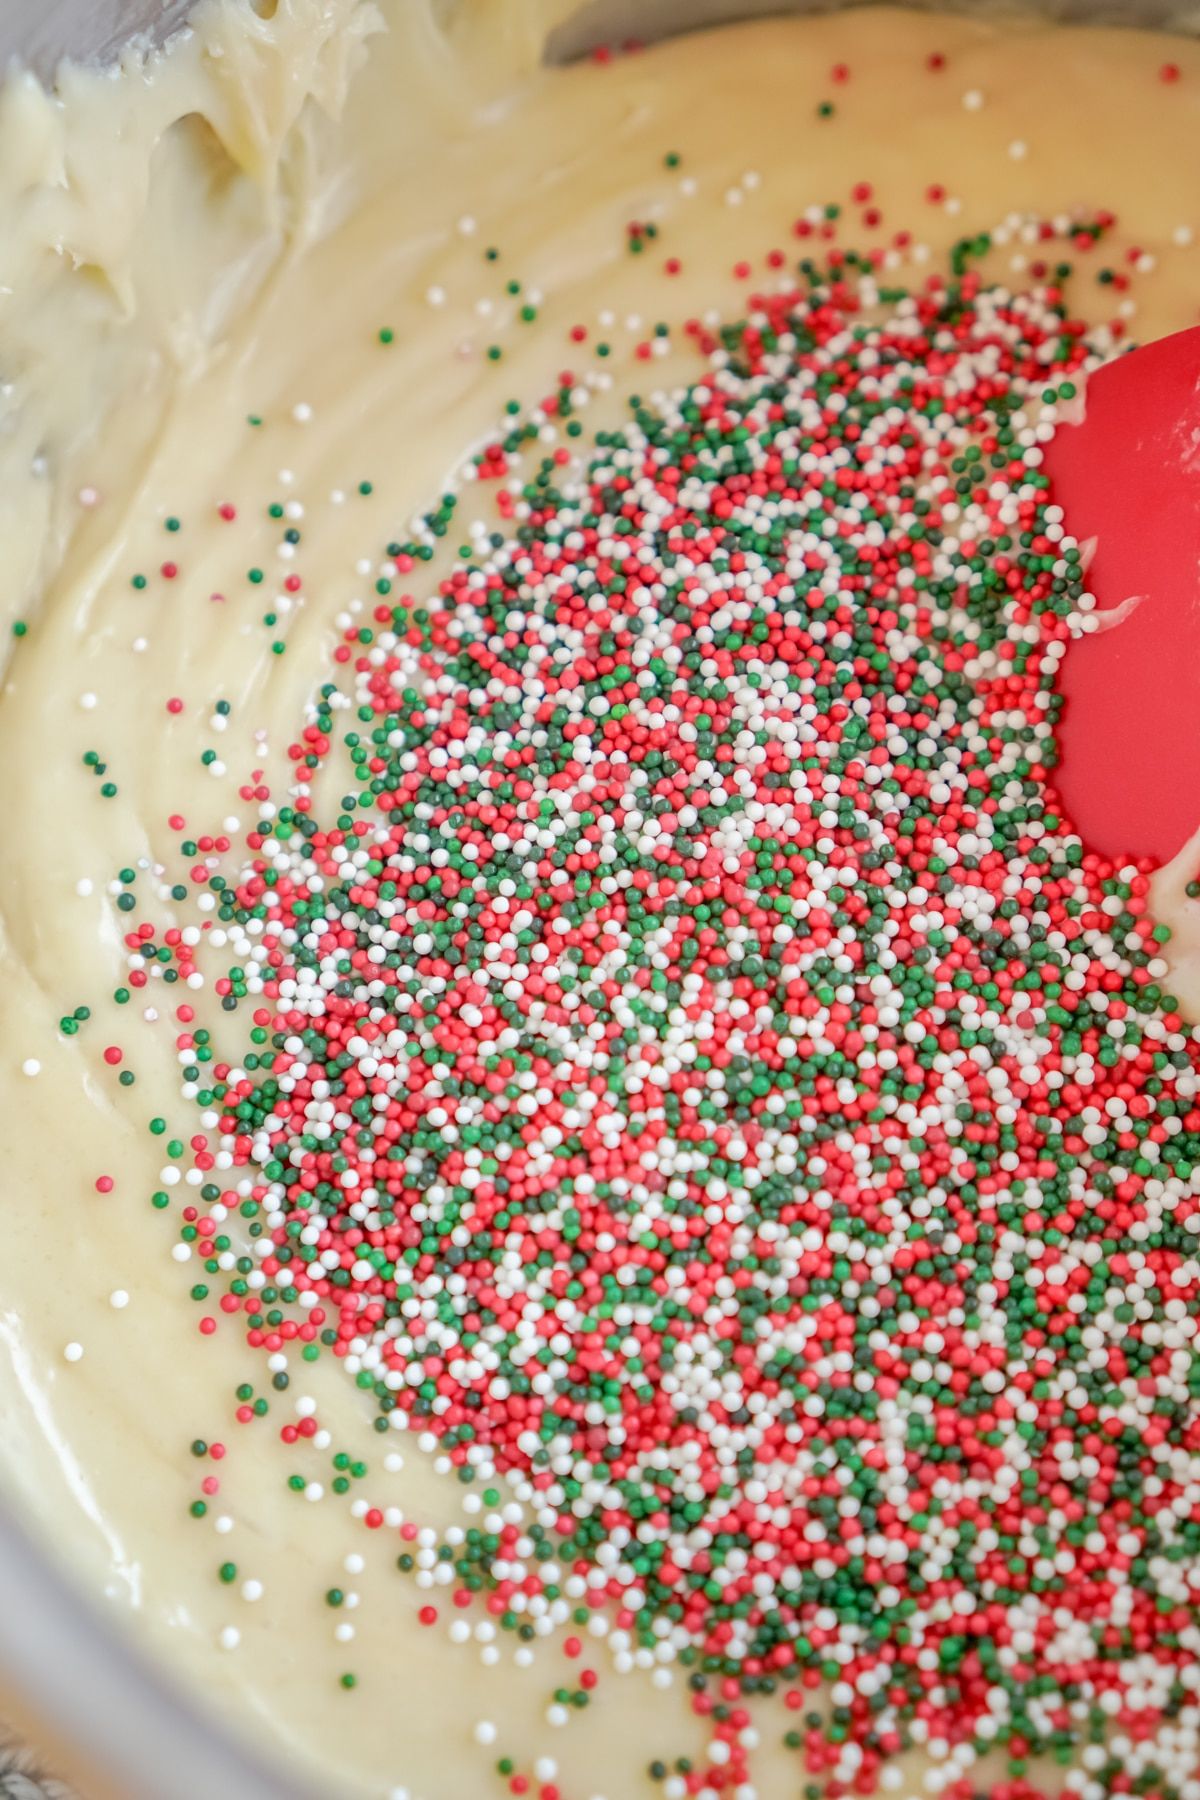 Sprinkles ile beyaz çikolata fudge karışımı